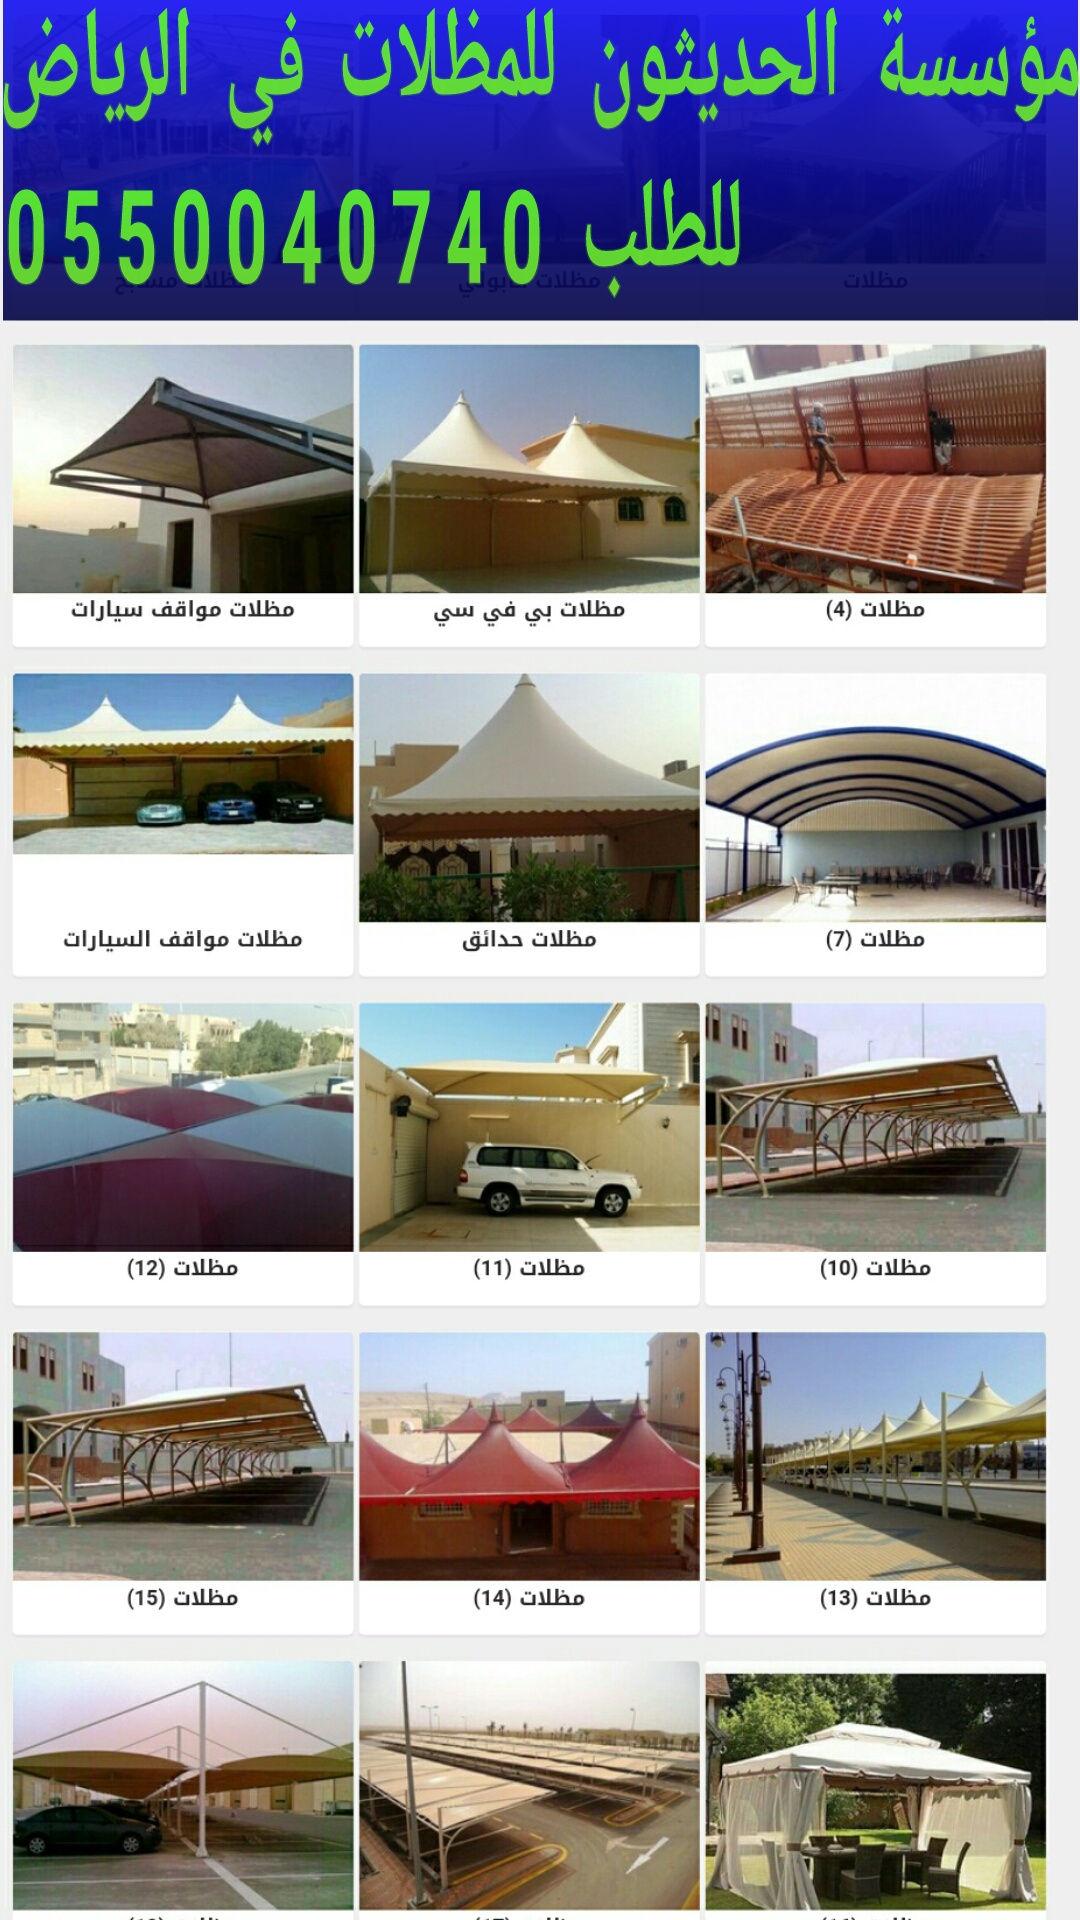 مؤسسة الحديثون 0550040740 مظلات سيارات بالرياض،مظلات بوابات في الرياض P_1197hlnoz0